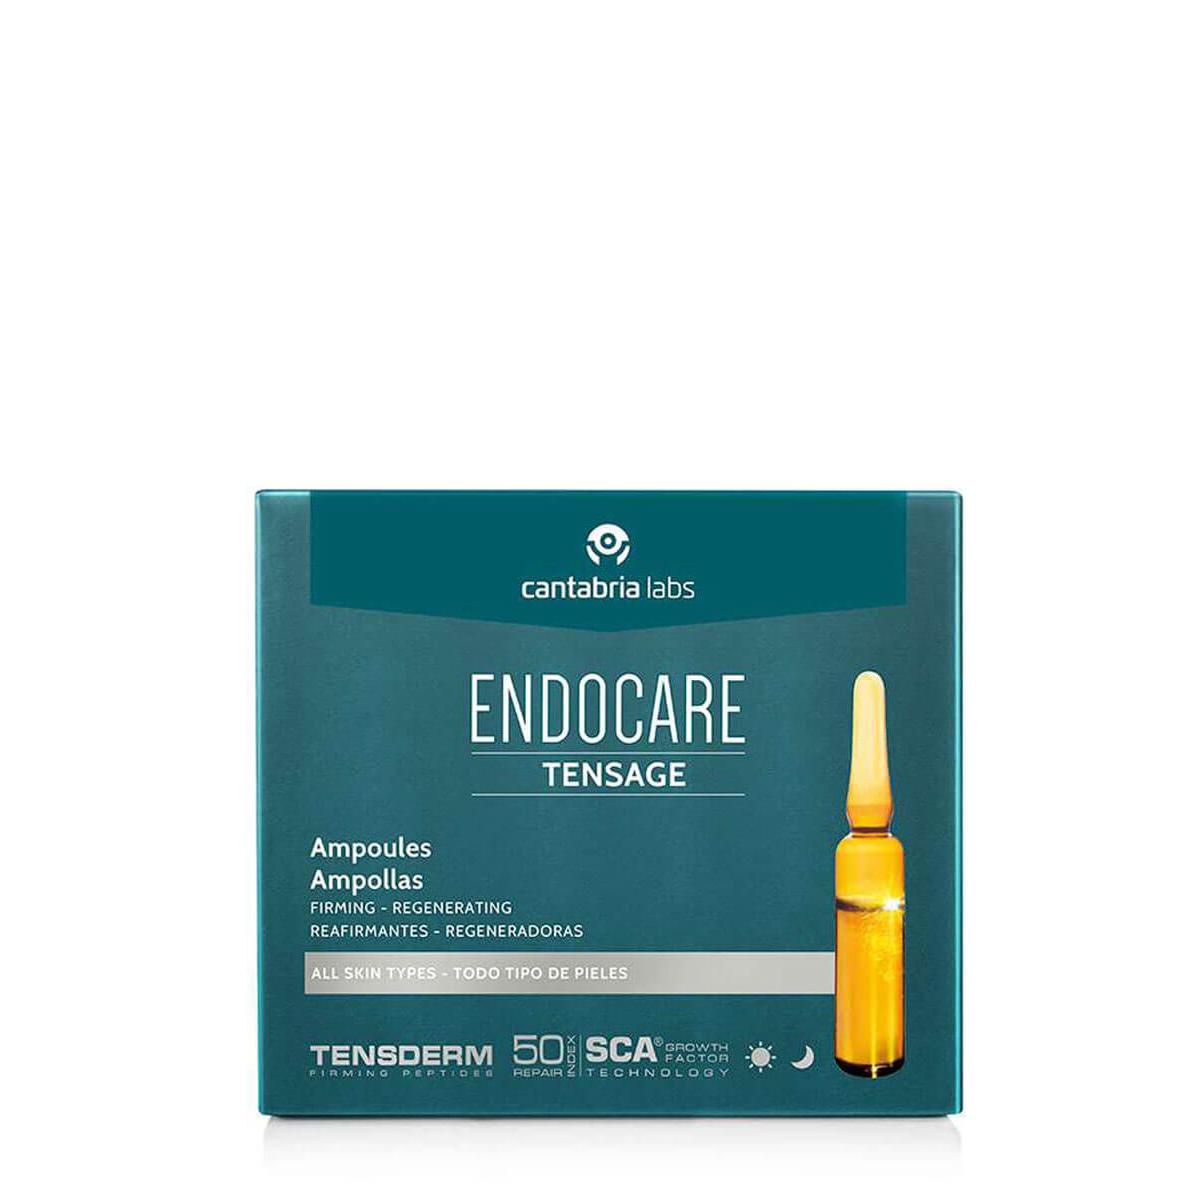 Endocare - Endocare tensage 10 ampollas 2 ml